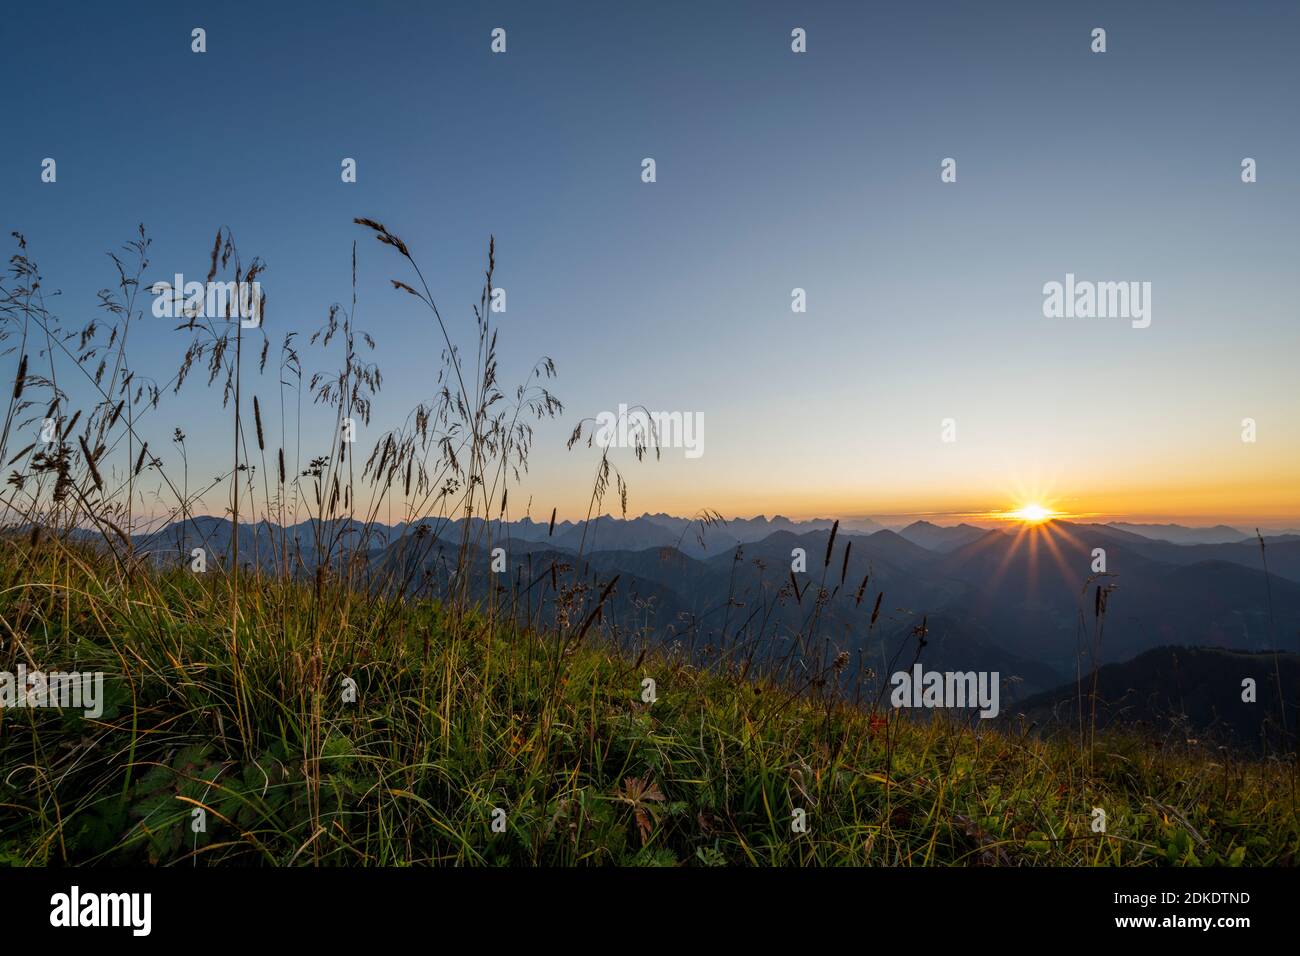 Sonnenstern bei Sonnenuntergang in den Bergen, genauer gesagt über dem Karwendelgebirge, am linken Bildrand hohes Gras in einer Bergwiese. Stockfoto